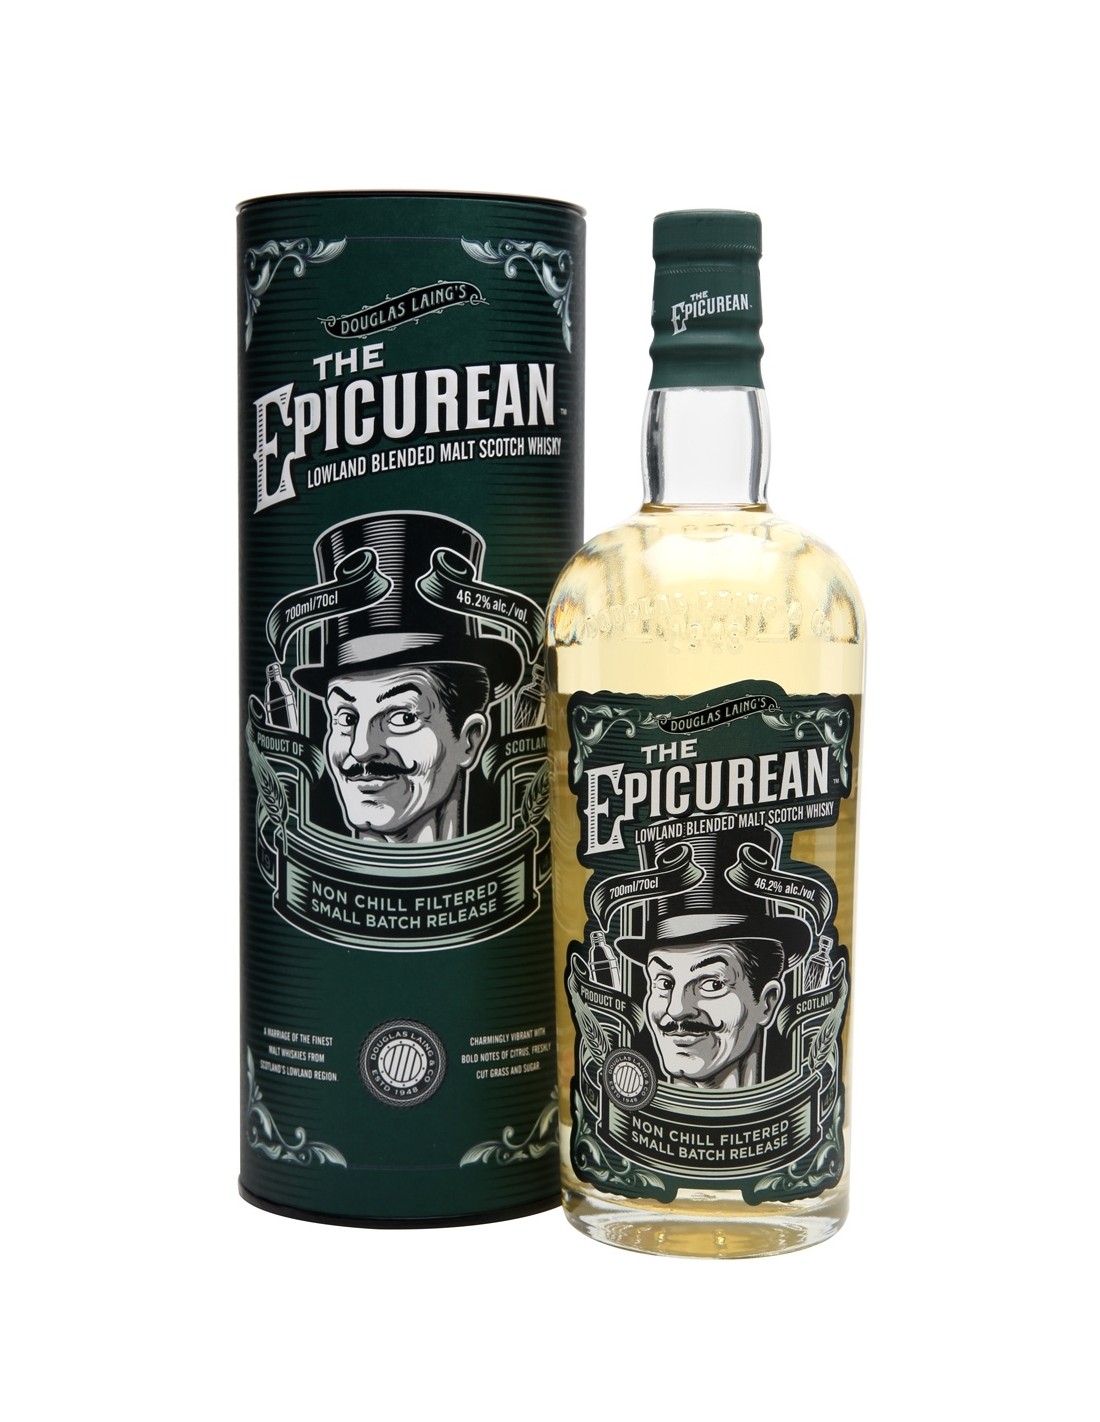 Whisky The Epicurean, 46.2% alc., 0.7L, Scotia